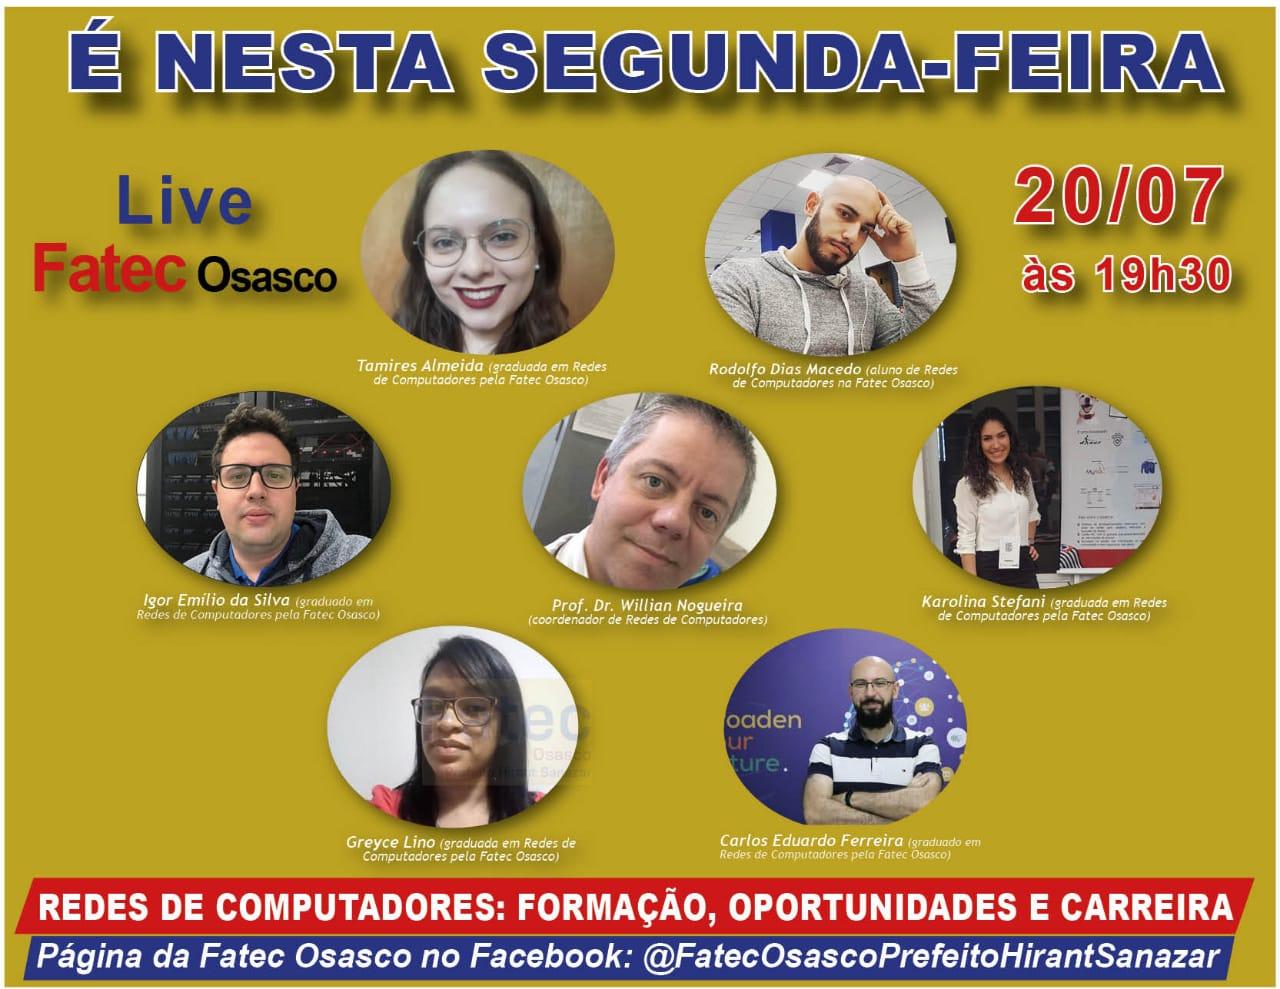 Live Fatec Osasco - Formação, Oportunidades e Carreira